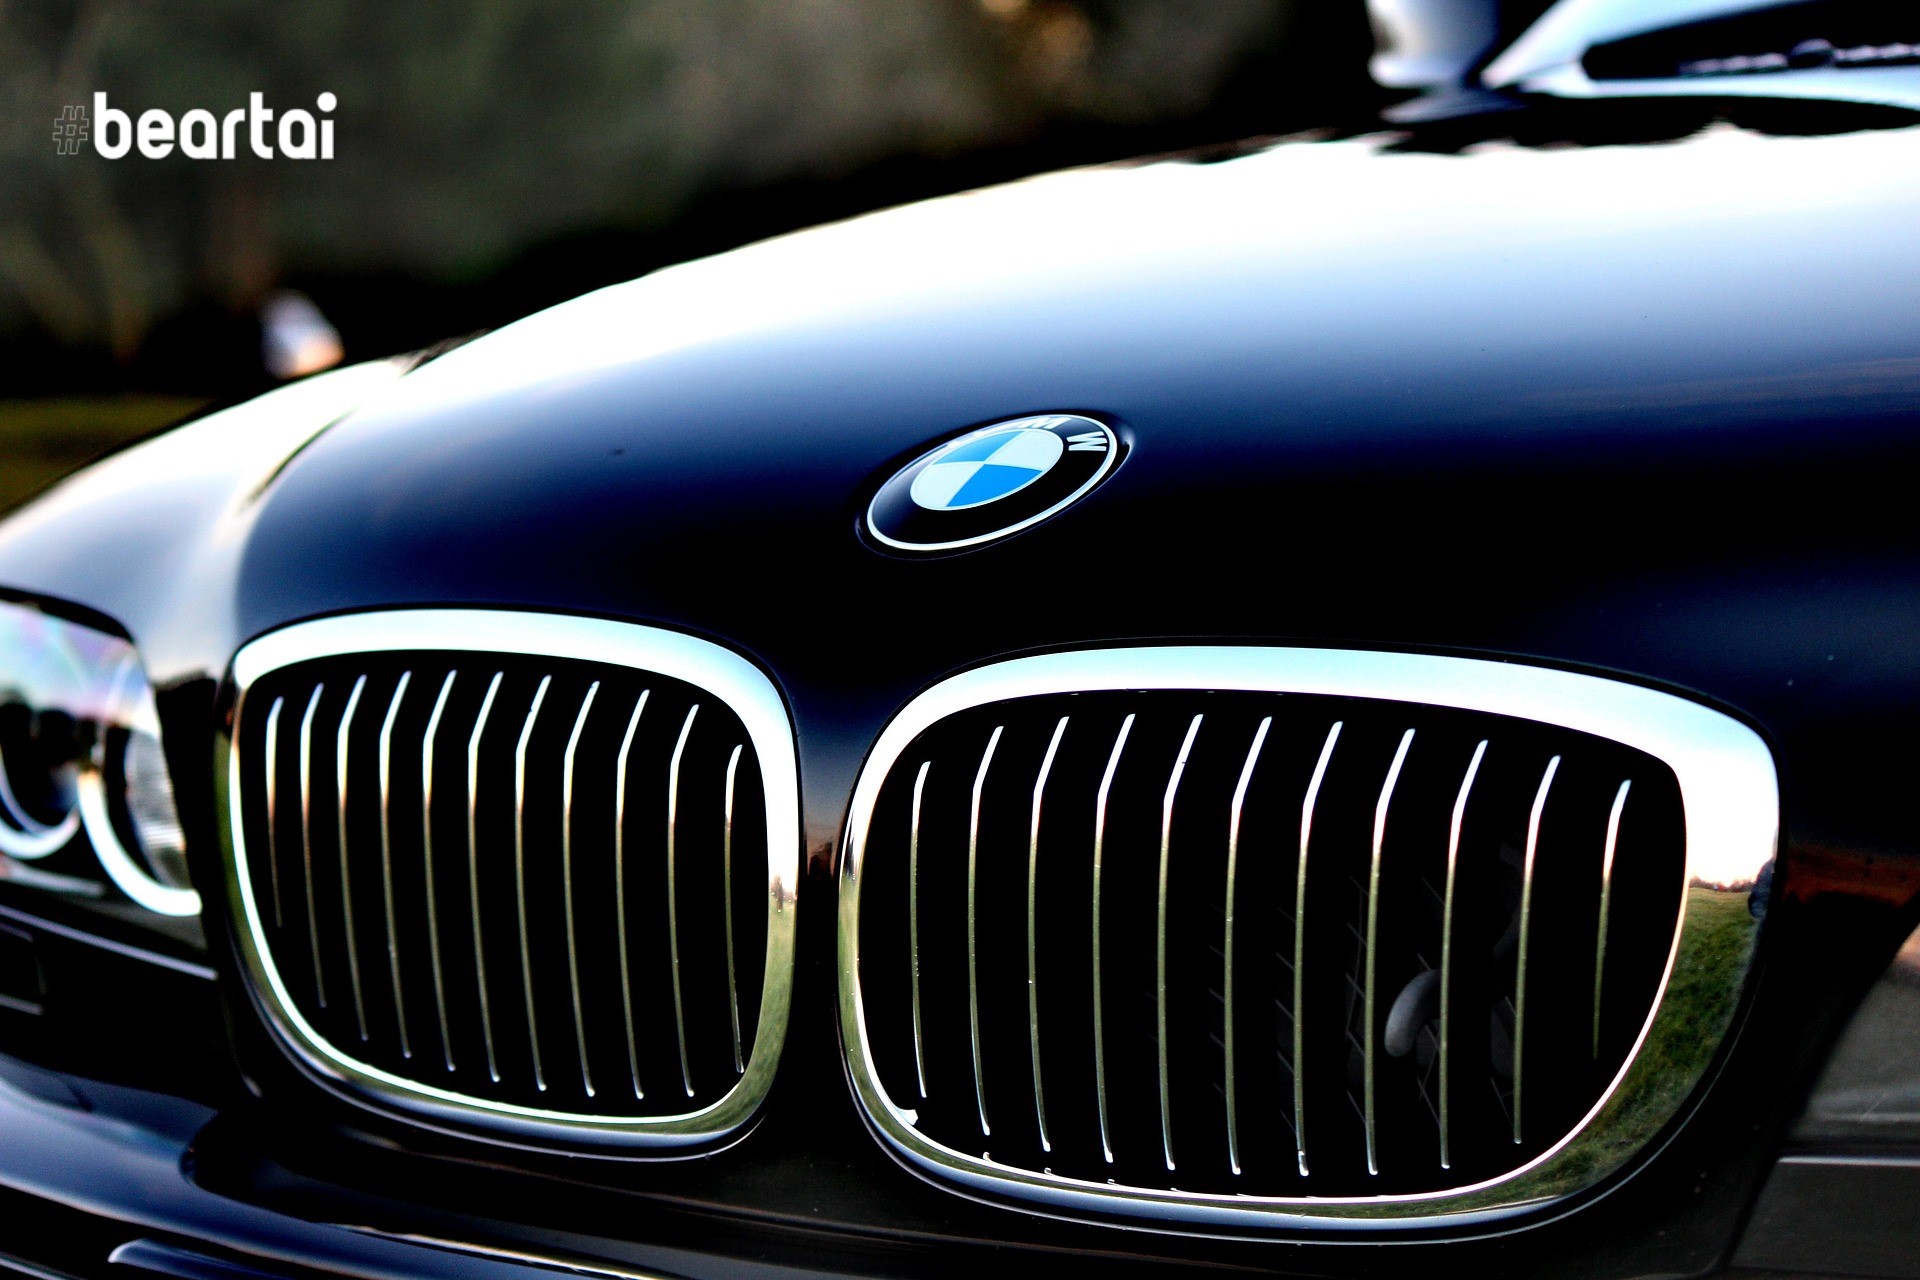 BMW และ Hyundai ถูกกลุ่ม OceanLotus พยายามแฮกข้อมูลความลับทางการค้า